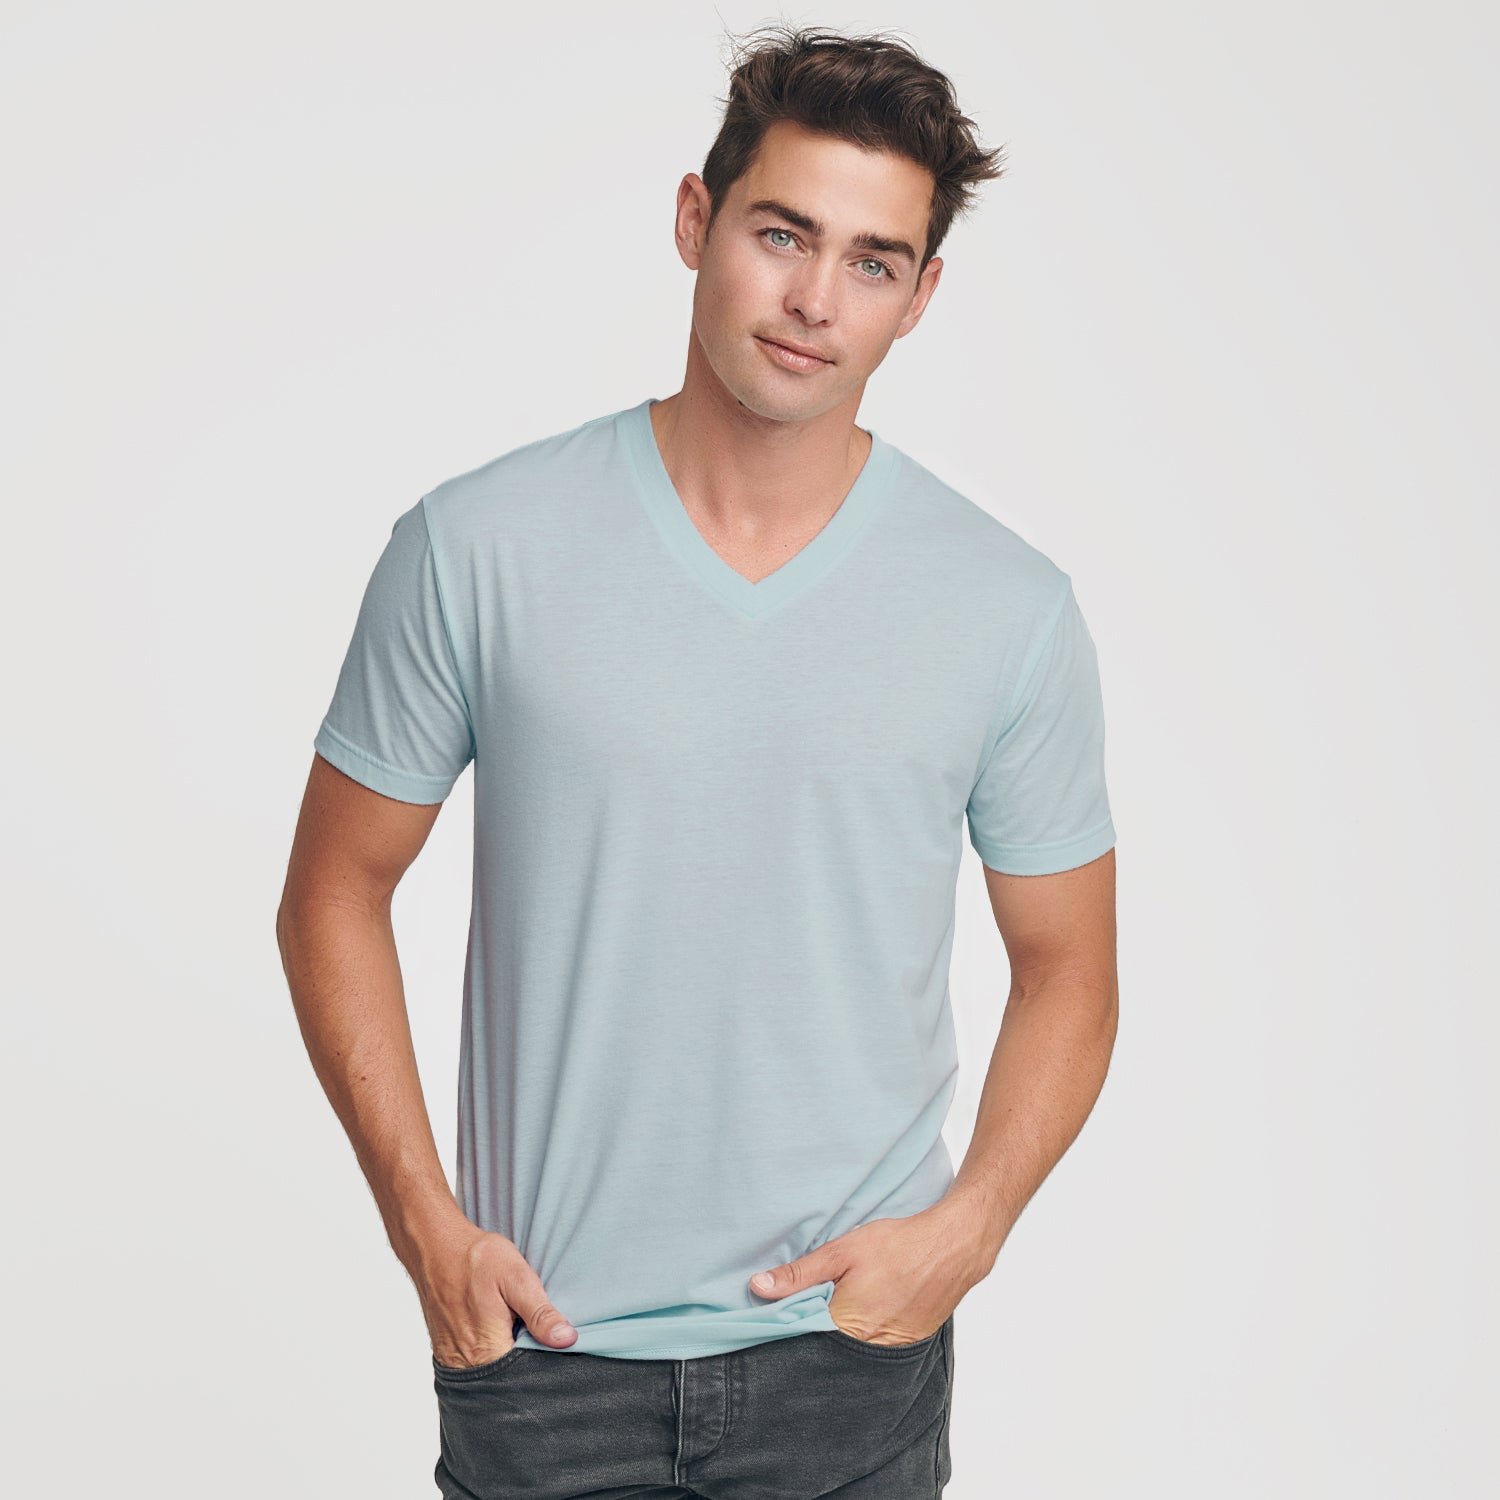 Light Blue V-Neck T-Shirt